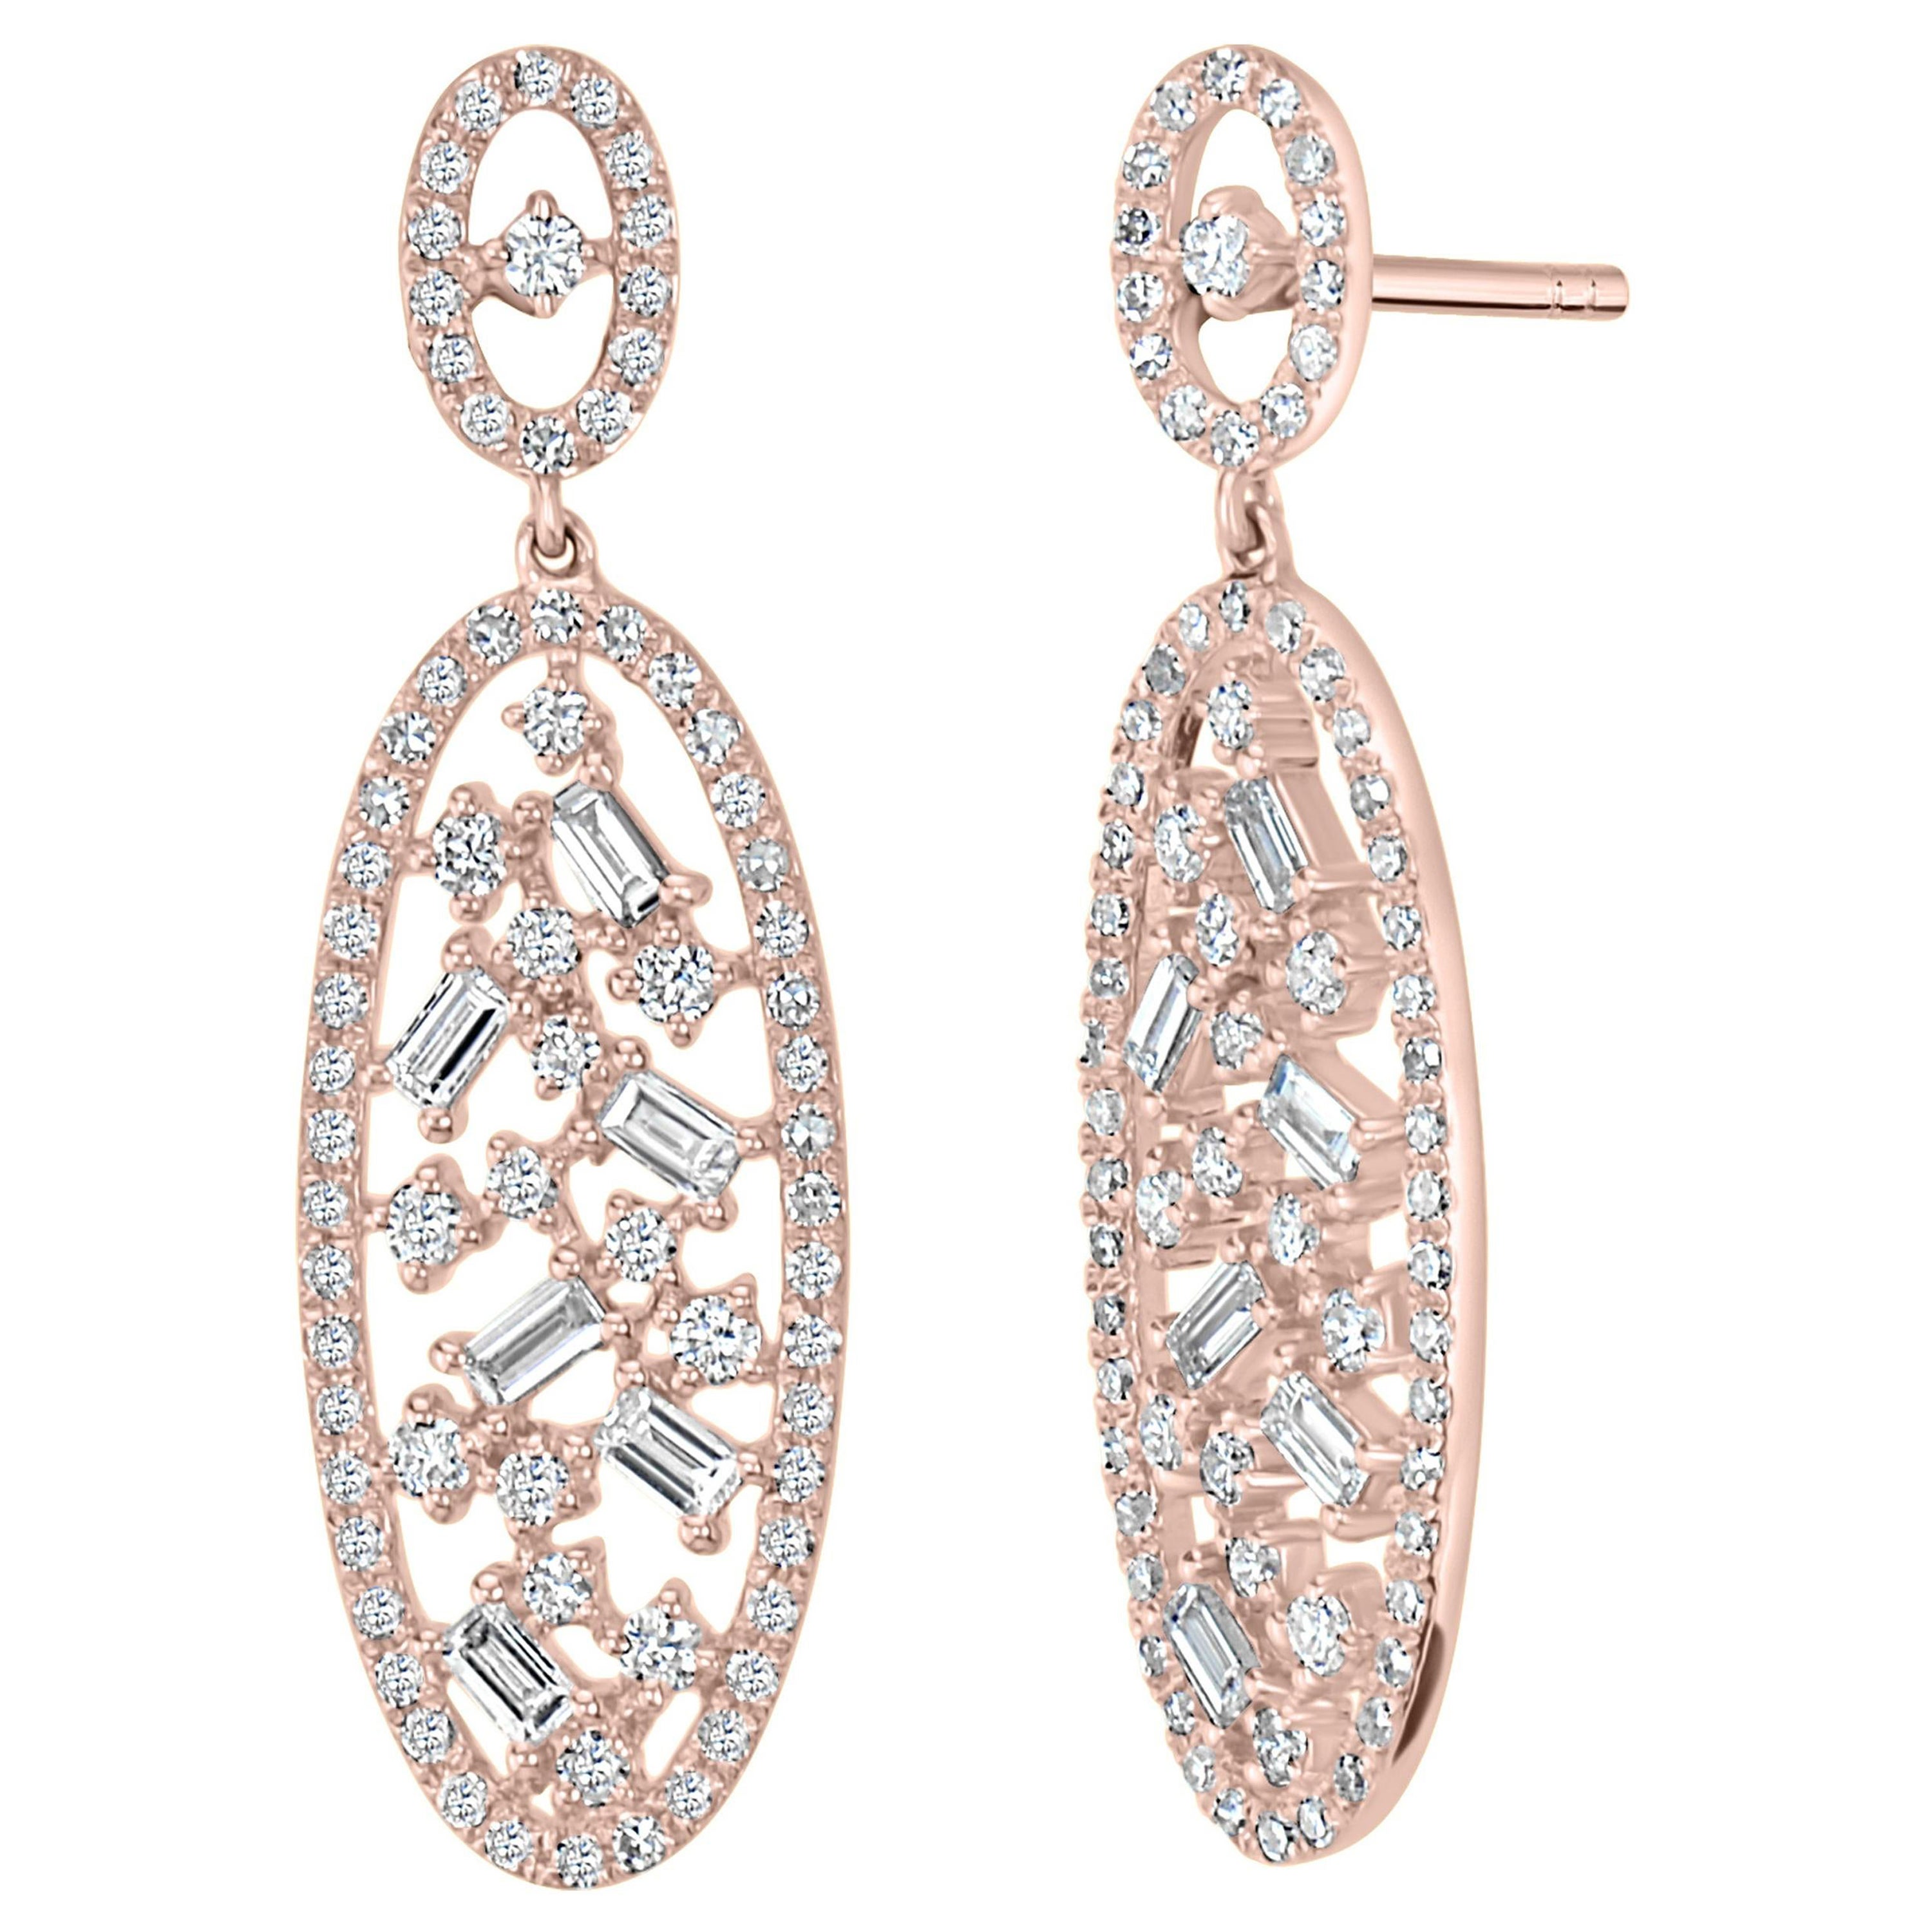 Luxle 1.04cttw Diamond Oval Drop Earrings in 18k Rose Gold